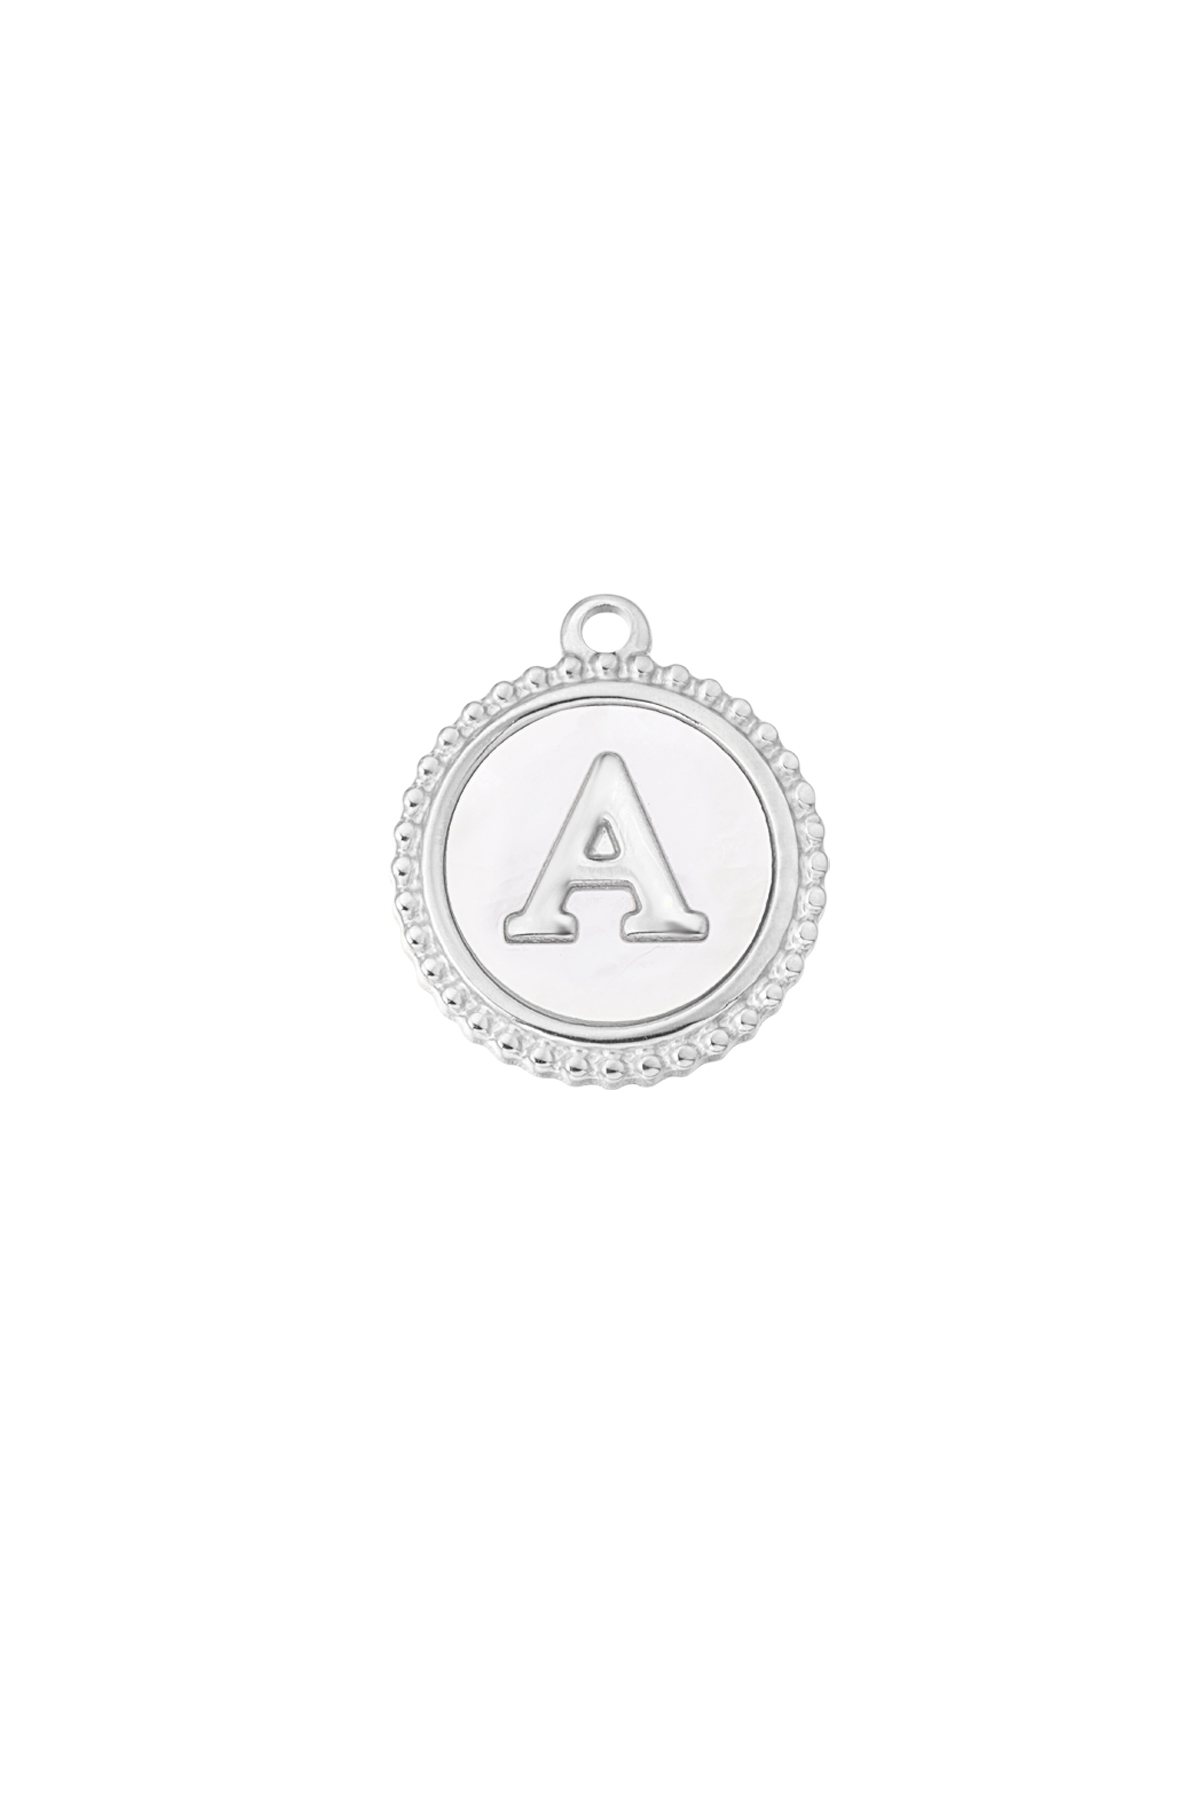 Charm elegant A - gümüş/beyaz h5 